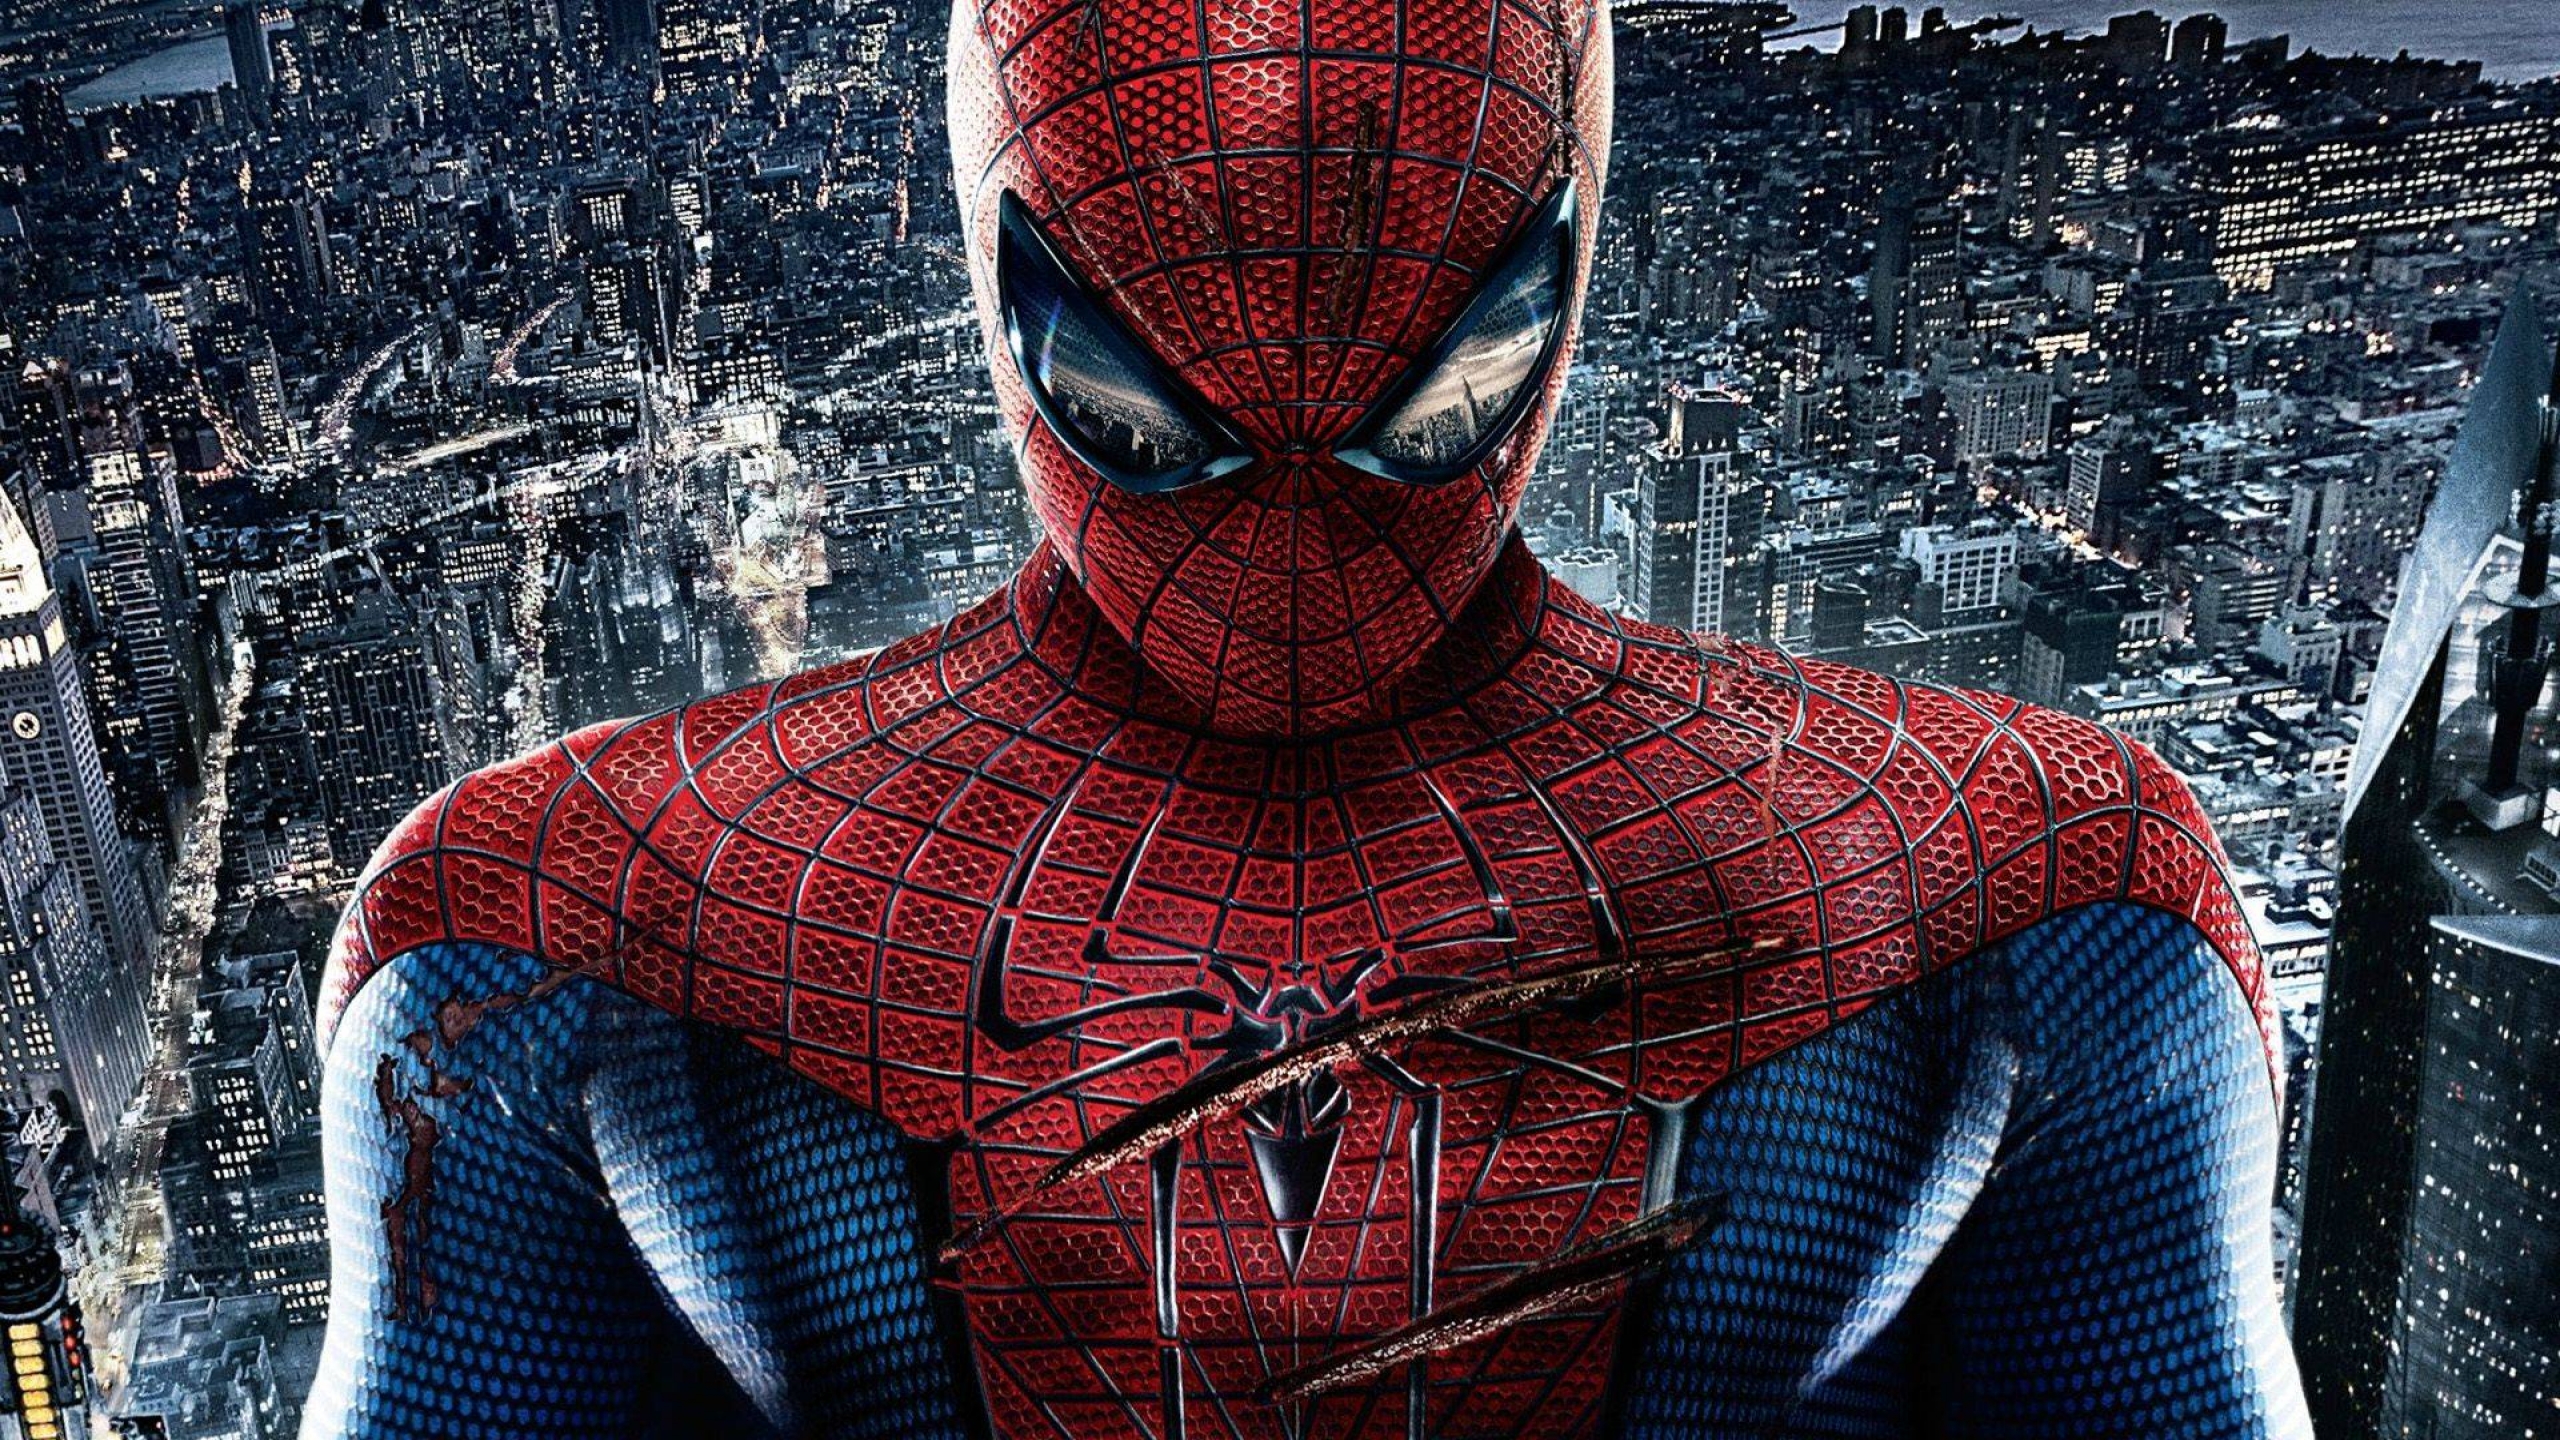 incroyable spiderman fonds d'écran hd,homme araignée,super héros,personnage fictif,figurine,héros